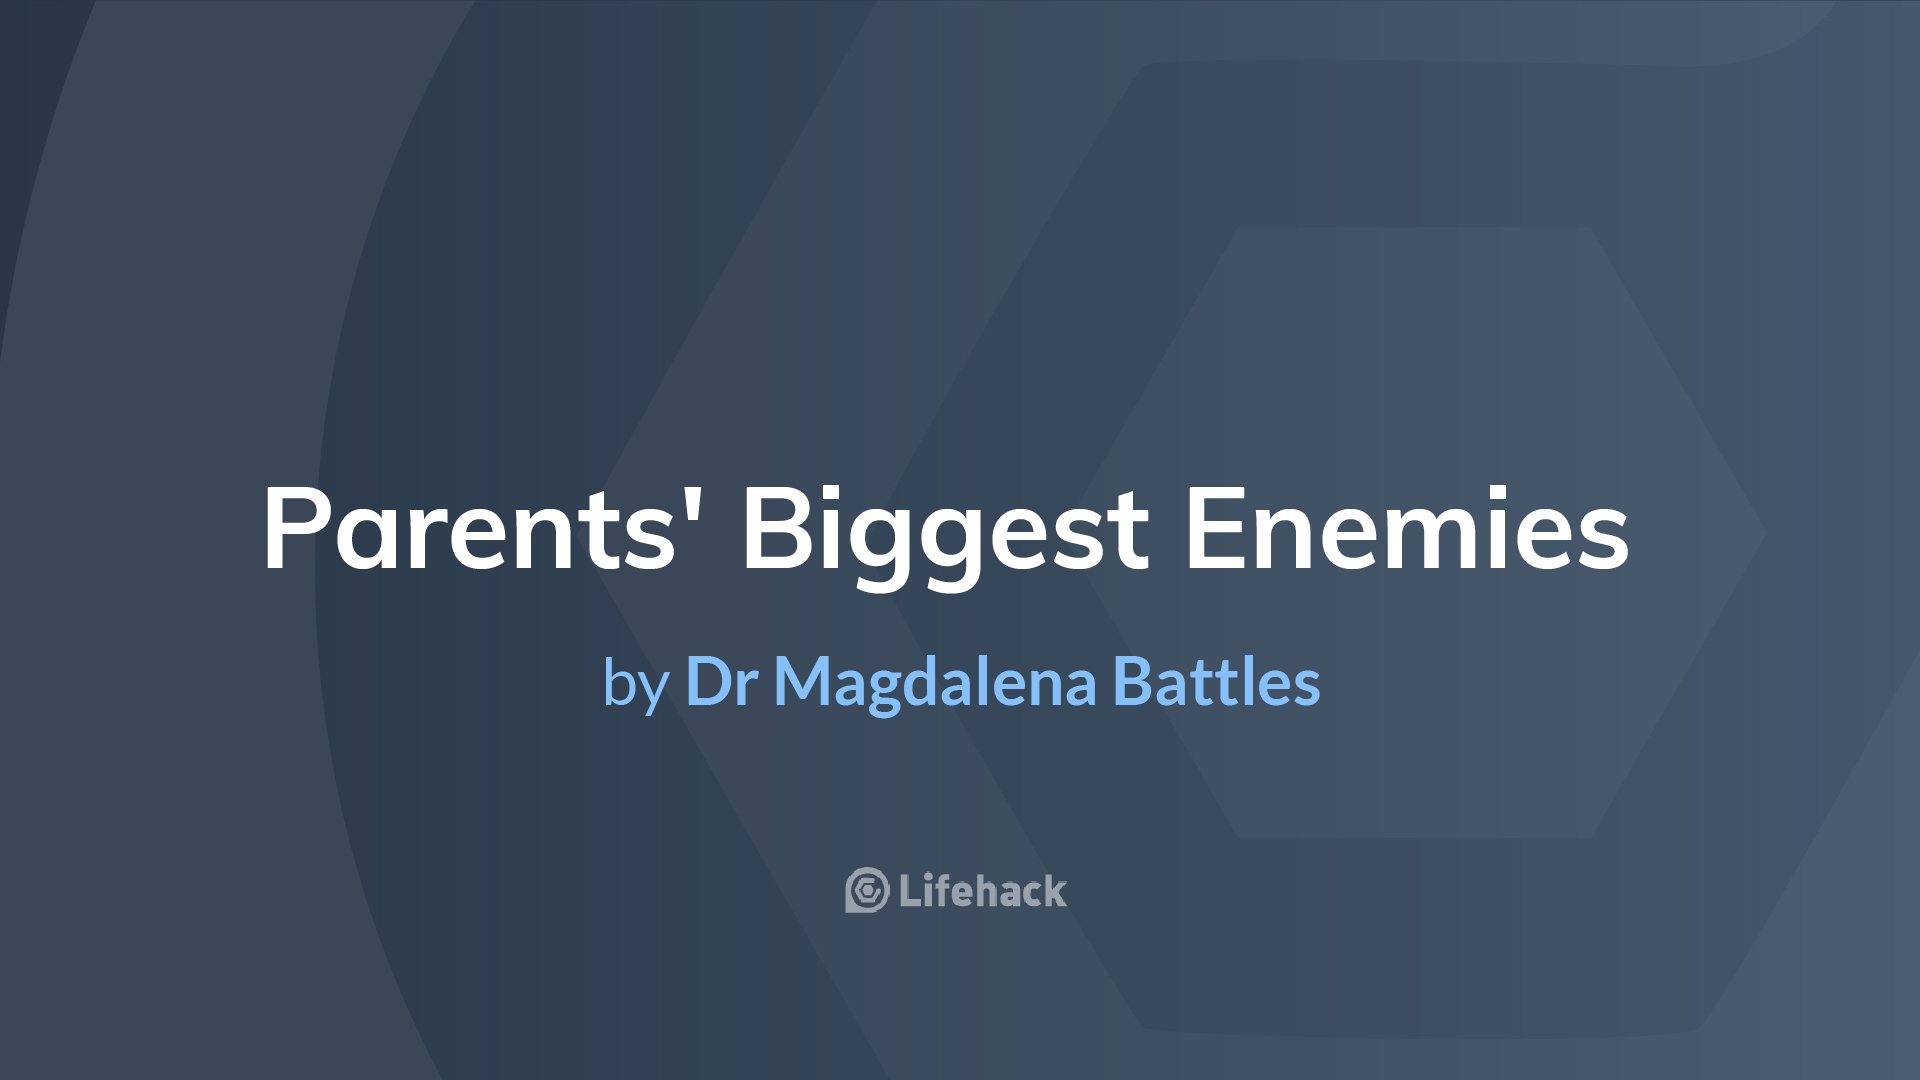 Entitled Kids Are Parents’ Biggest Enemies